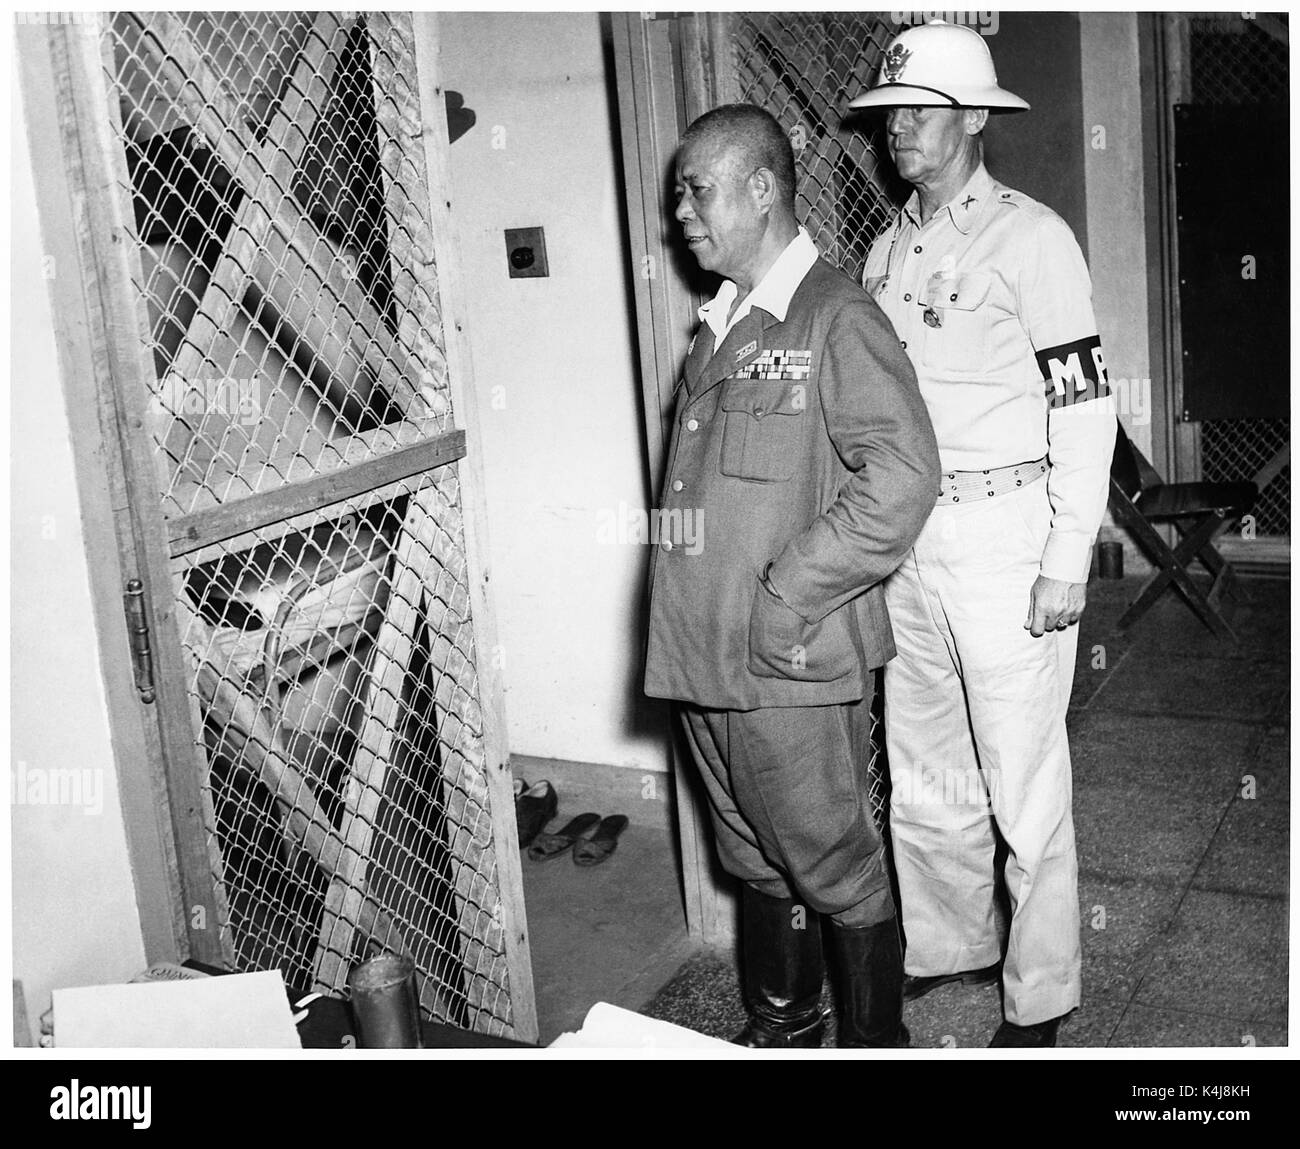 Tomoyuki Yamashita (1885-1946) aussi connu comme 'Le Tigre de Malaisie", général de l'Armée impériale japonaise pendant la Seconde Guerre mondiale qui ont envahi les possessions britanniques de Malaisie et Singapour. Du 29 octobre au 7 décembre 1945, un tribunal militaire américain à Manille a essayé général Yamashita pour crimes de guerre liés à la massacre de Manille et de nombreuses atrocités dans les Philippines et Singapour. La cour a conclu Yamashita a été reconnu coupable et condamné à mort. Photographie prise le 1 novembre 1945, retourné dans sa cellule, escorté par le Major A.S. 'Jack' Kenworthy pendant son procès pour crimes de guerre. Banque D'Images